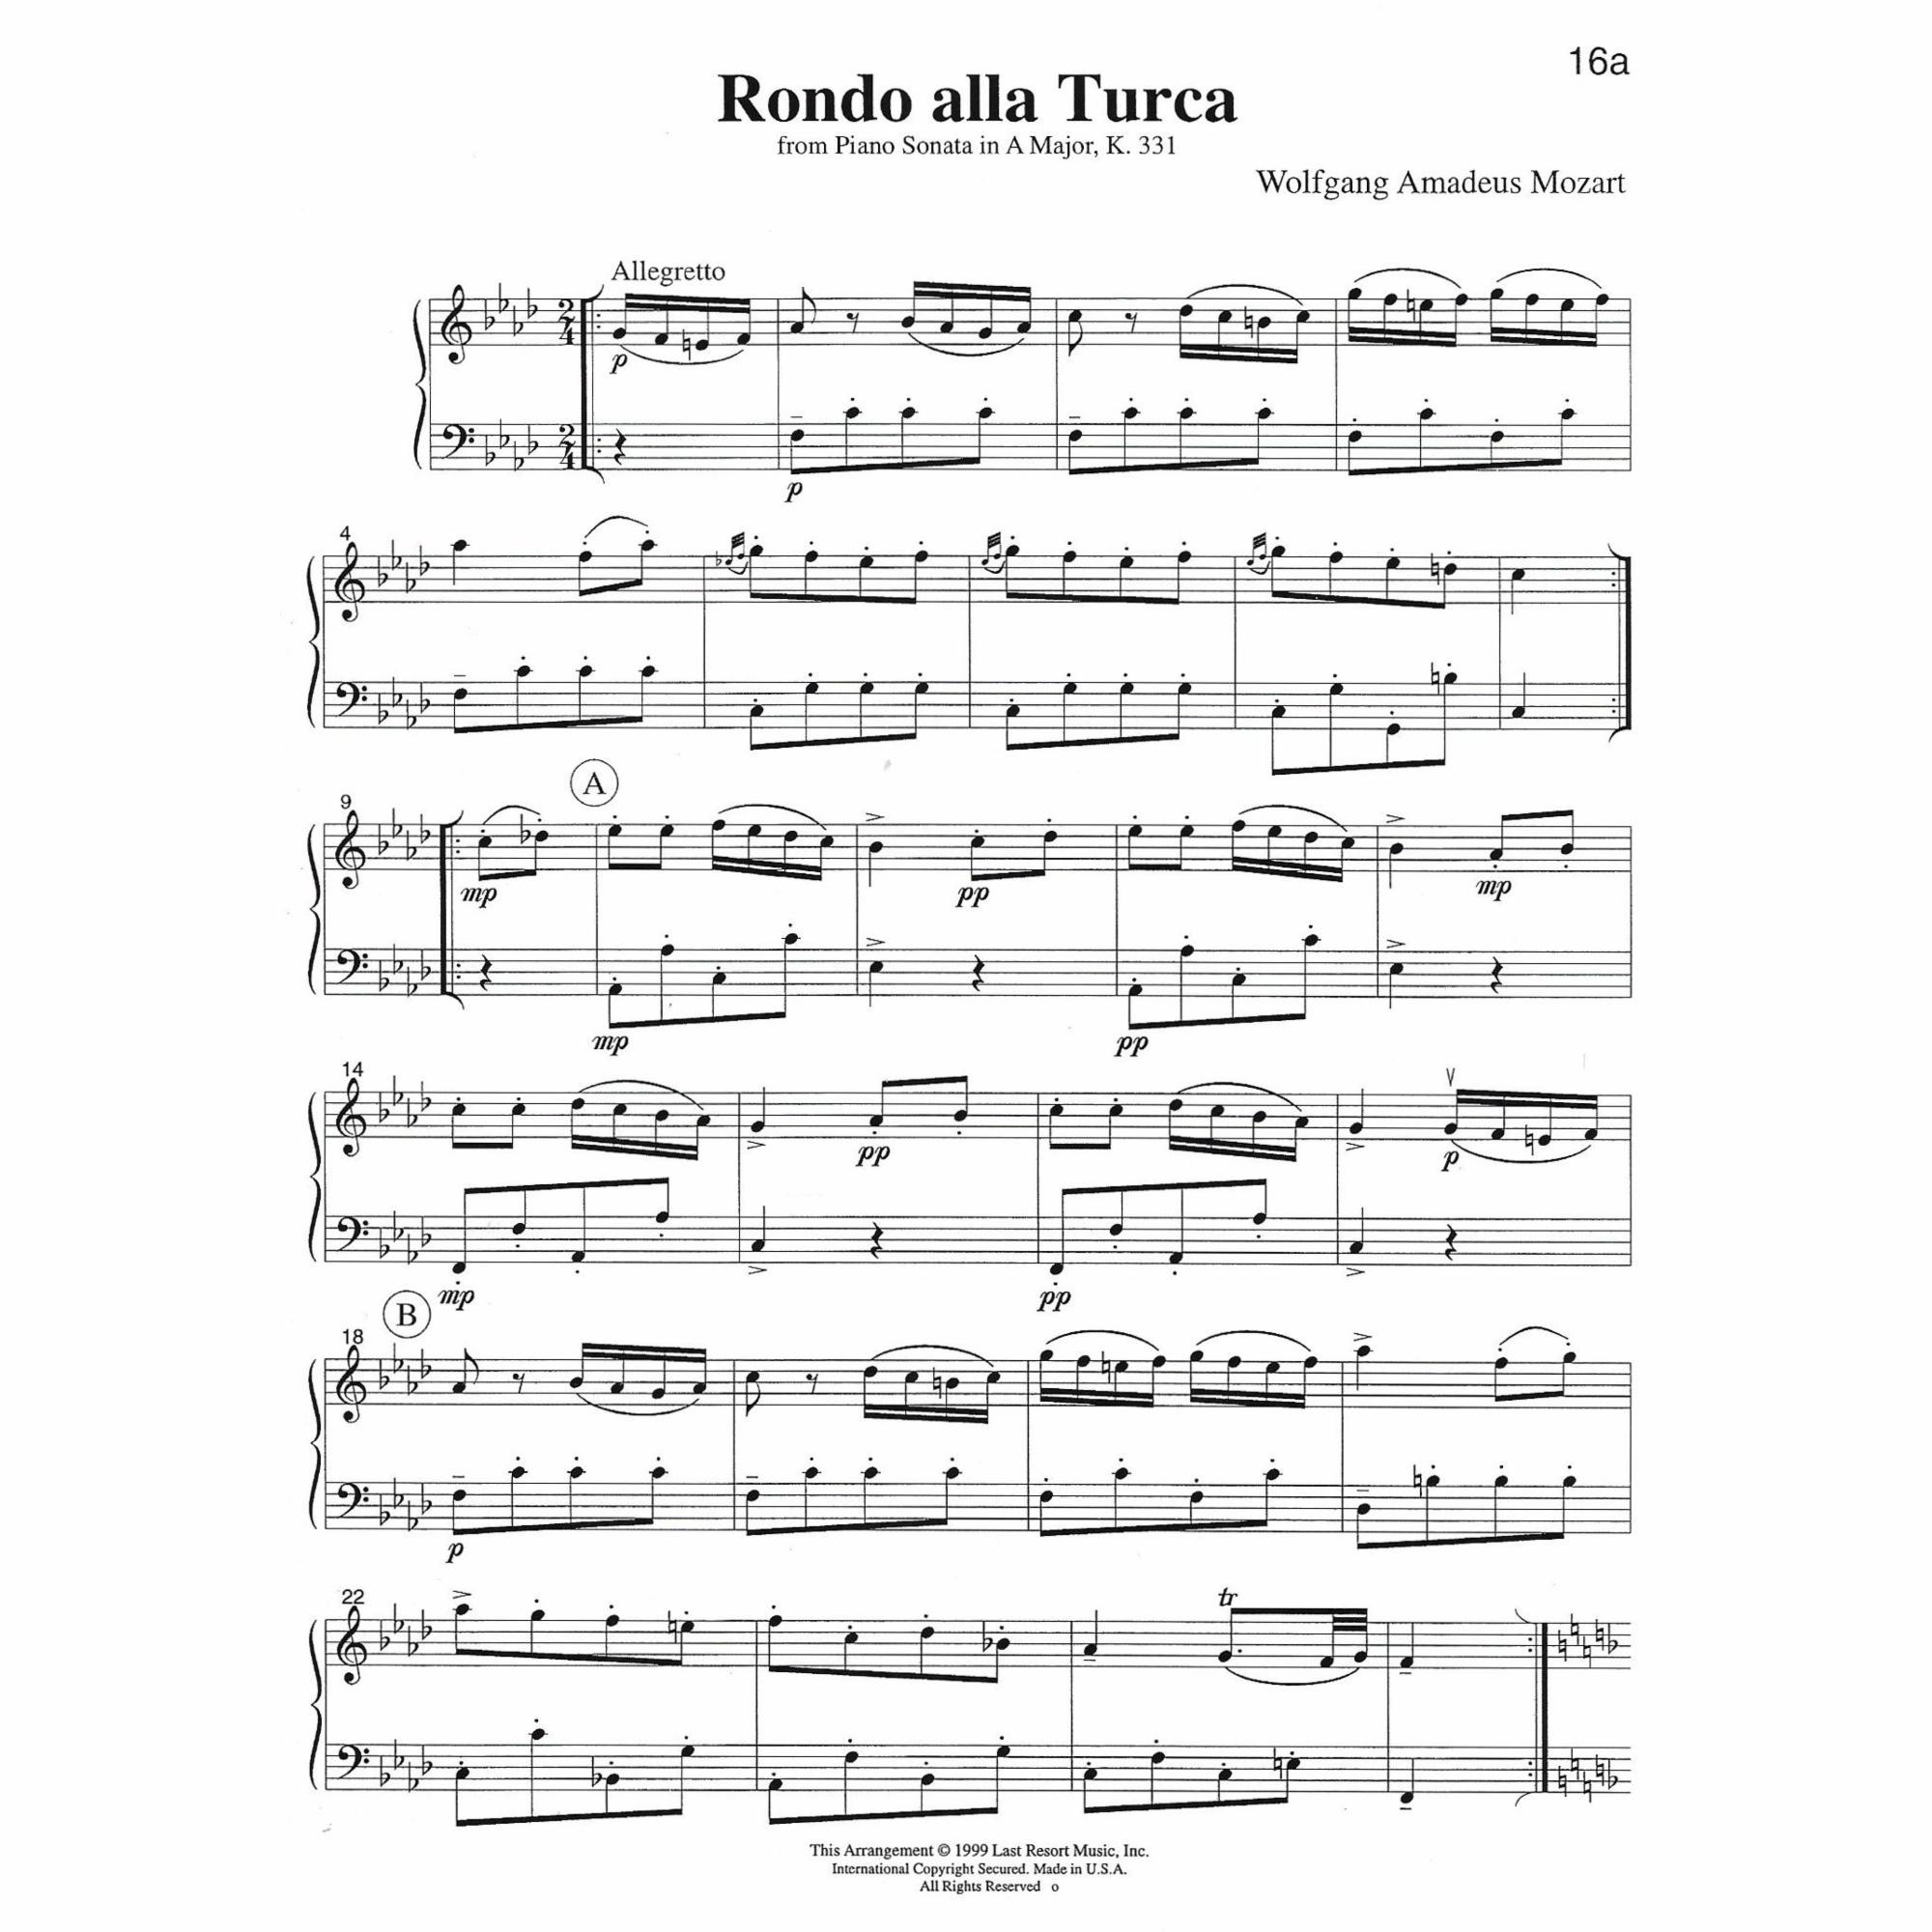 Sample: Violin and Cello (Pg. 16a)